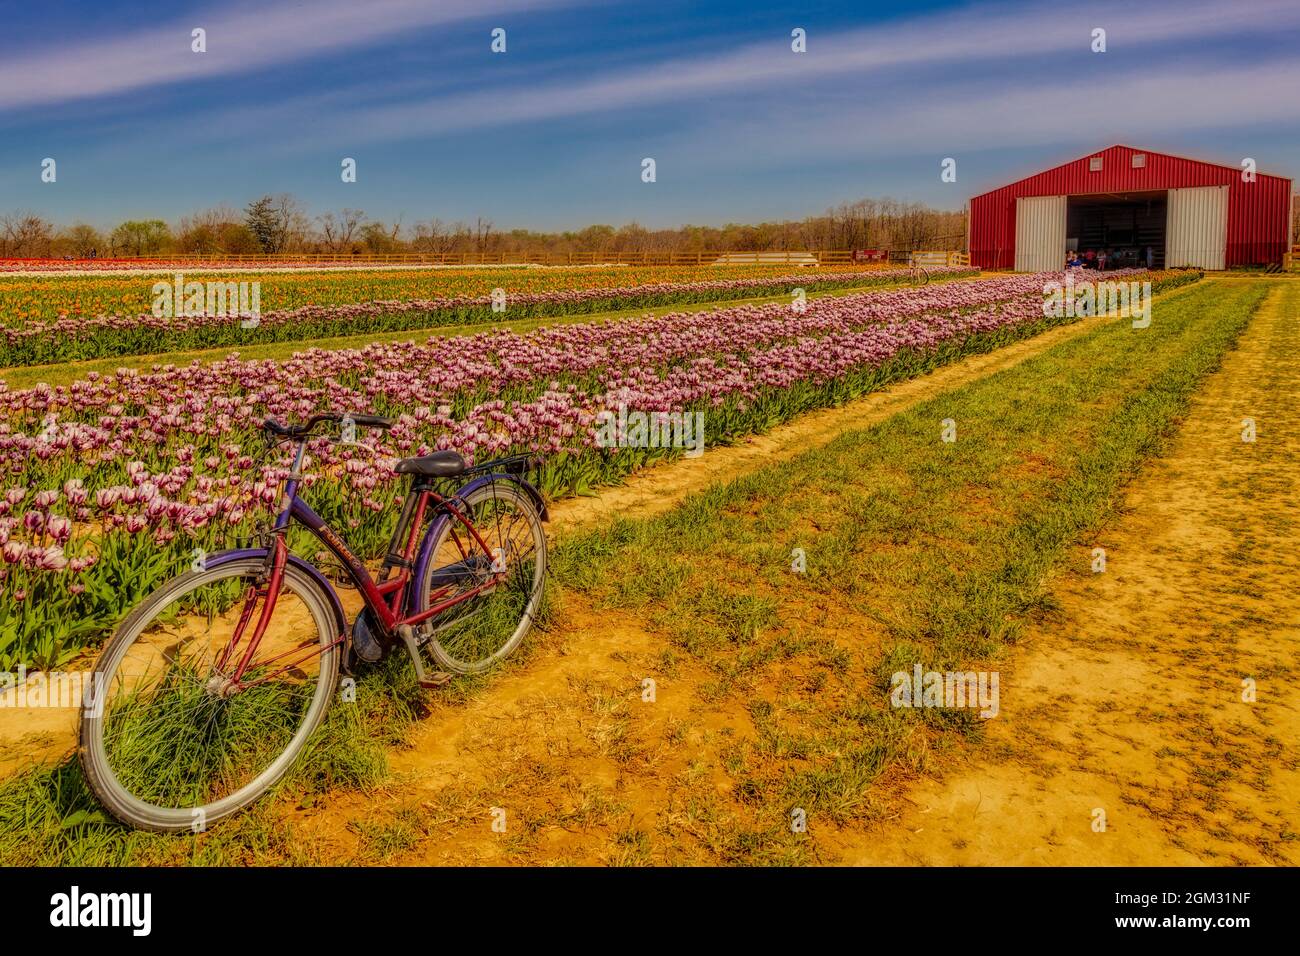 Tulpen, Fahrrad- und Scheune - Alte Zeiger Fahrrad durch Tausende von schönen Tulpen und Scheune in der Farm umgeben. in Farbe erhältlich sowie in einem Bla Stockfoto